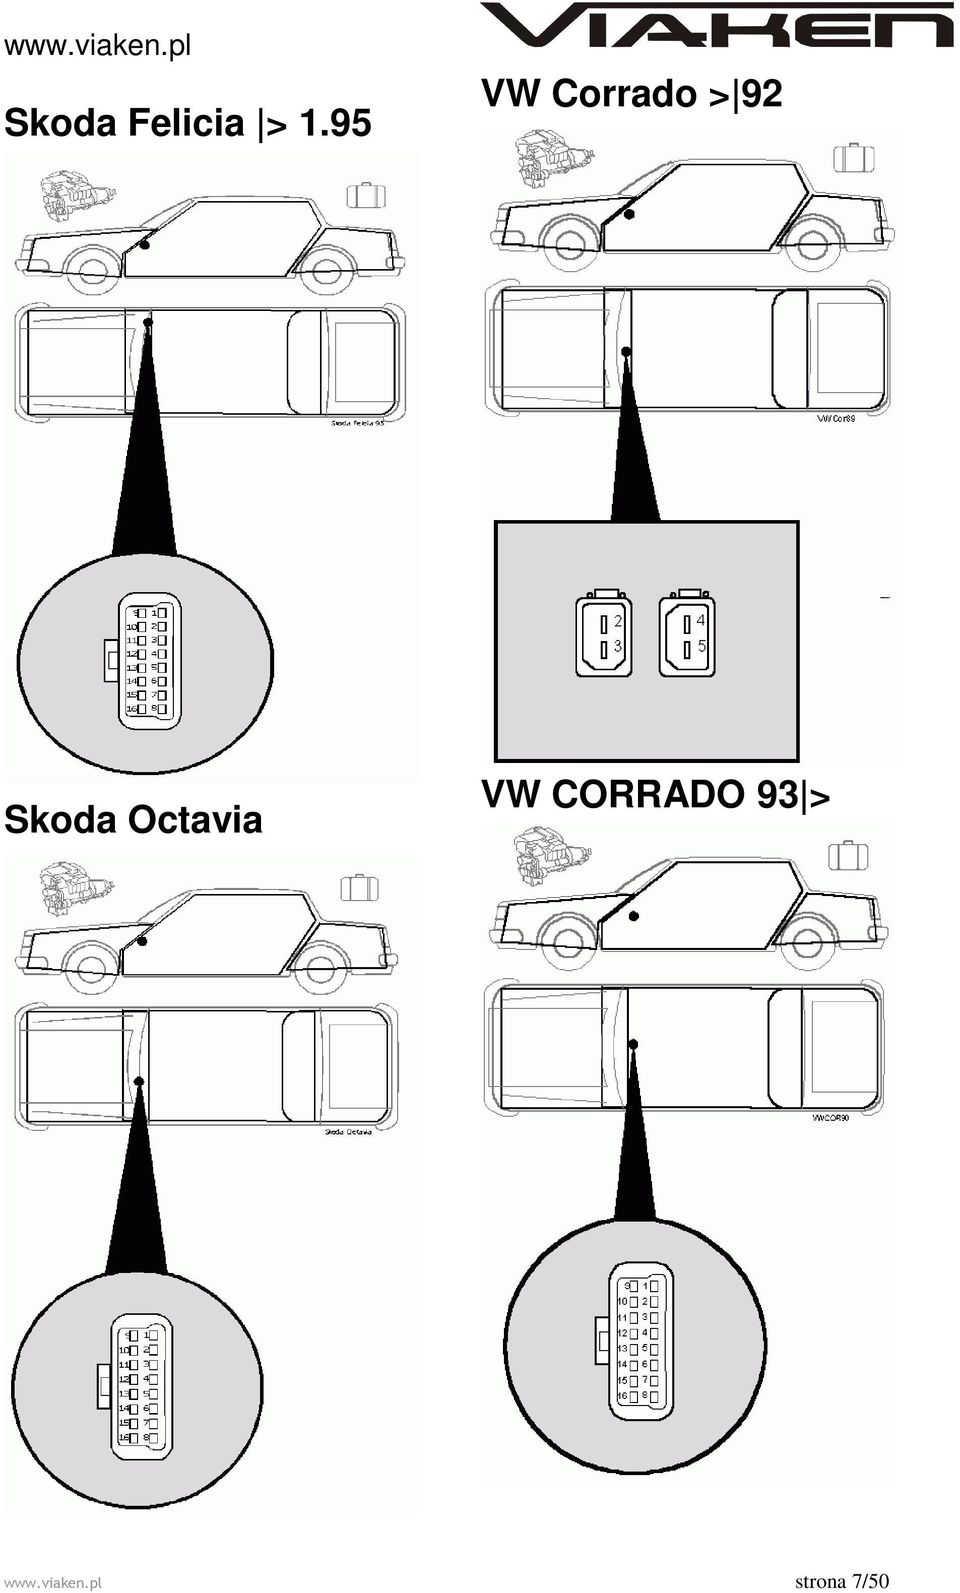 Skoda Octavia VW